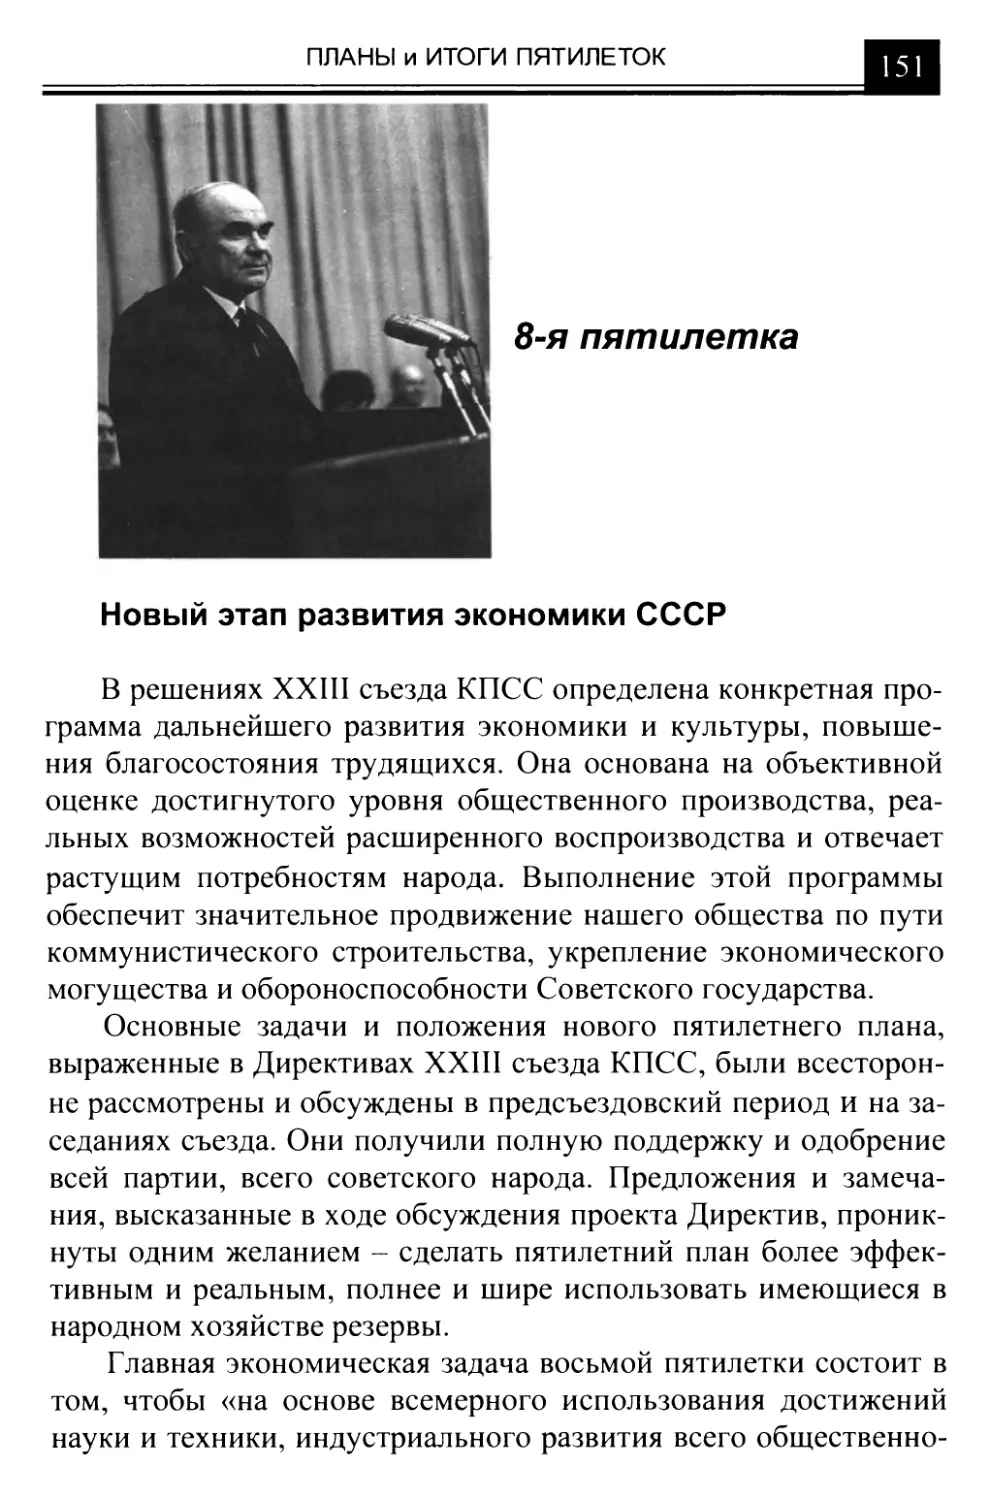 Новый этап развития экономики СССР